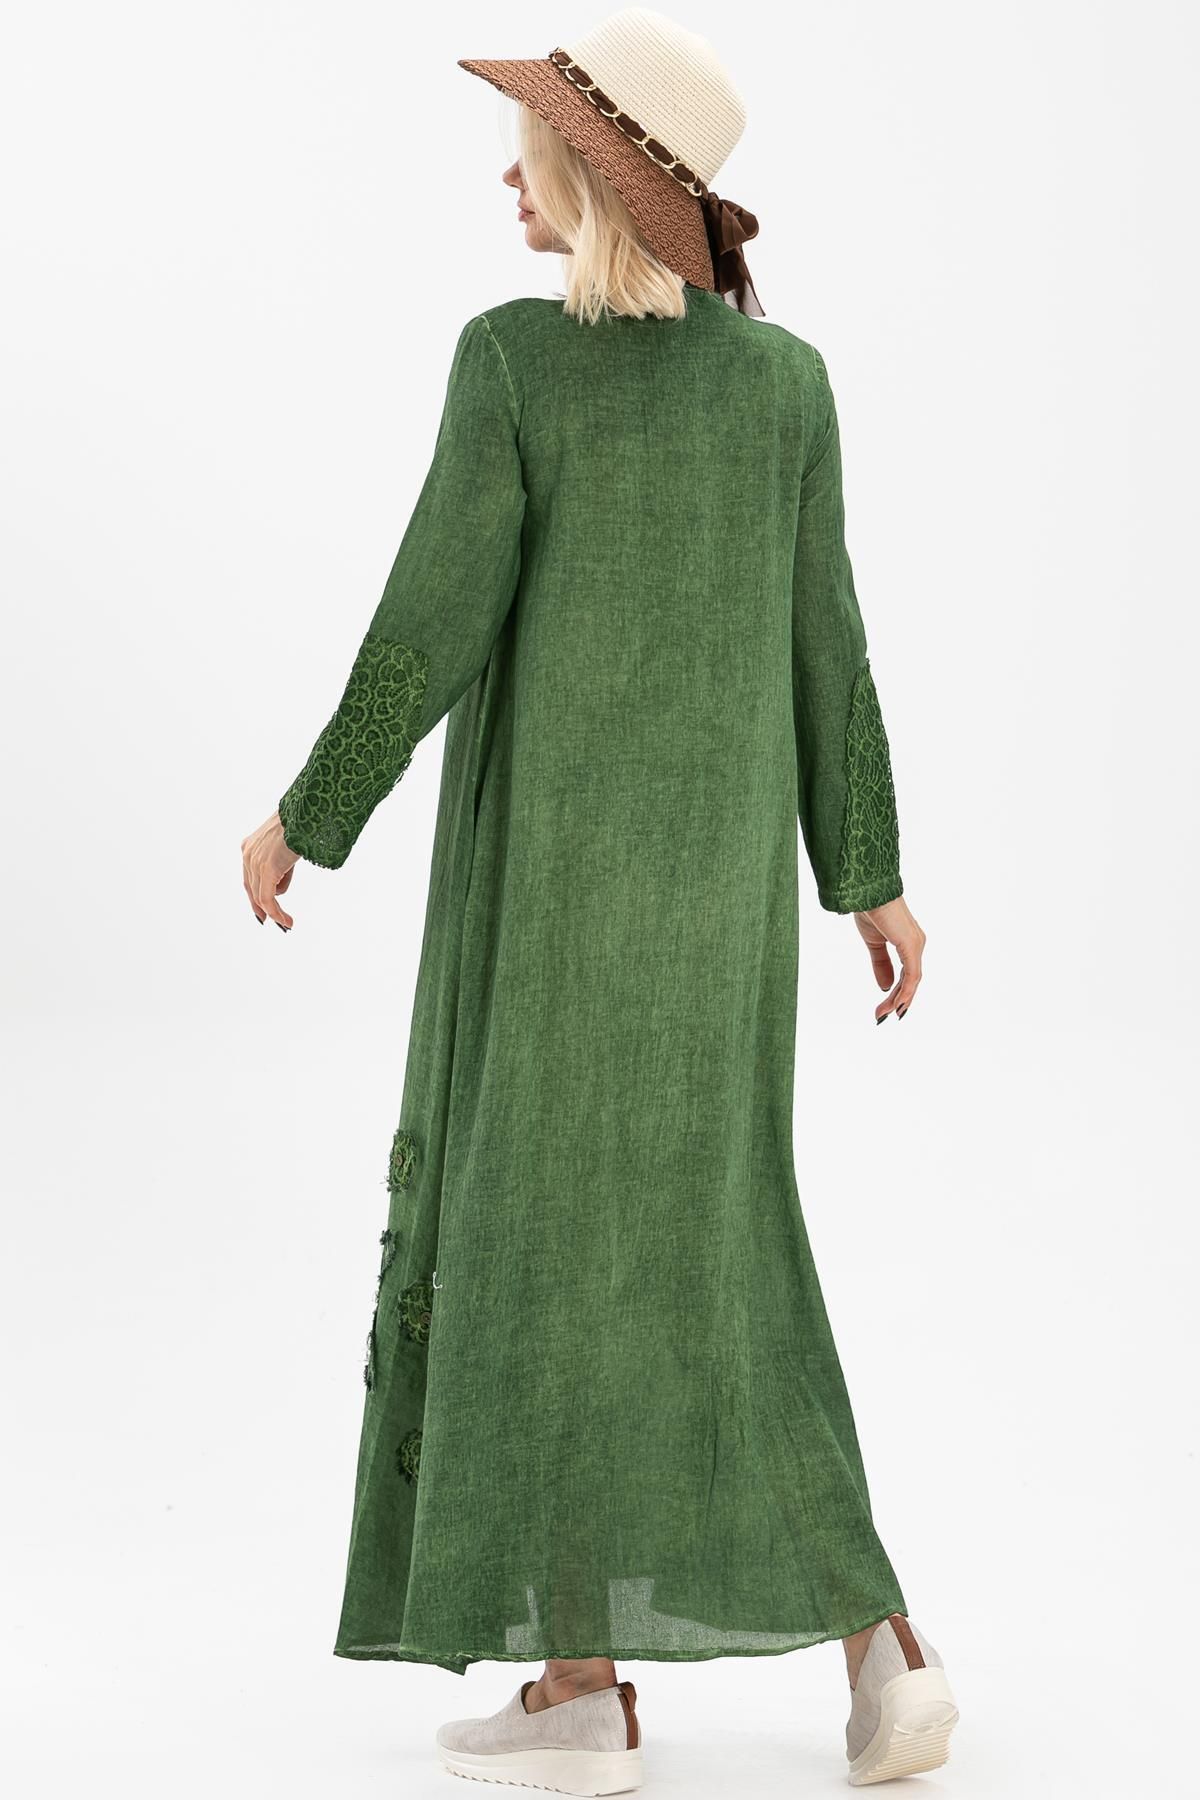 Eliş Şile Bezi لباس آستین بلند شیله پارچه زمردی سبز Ysl